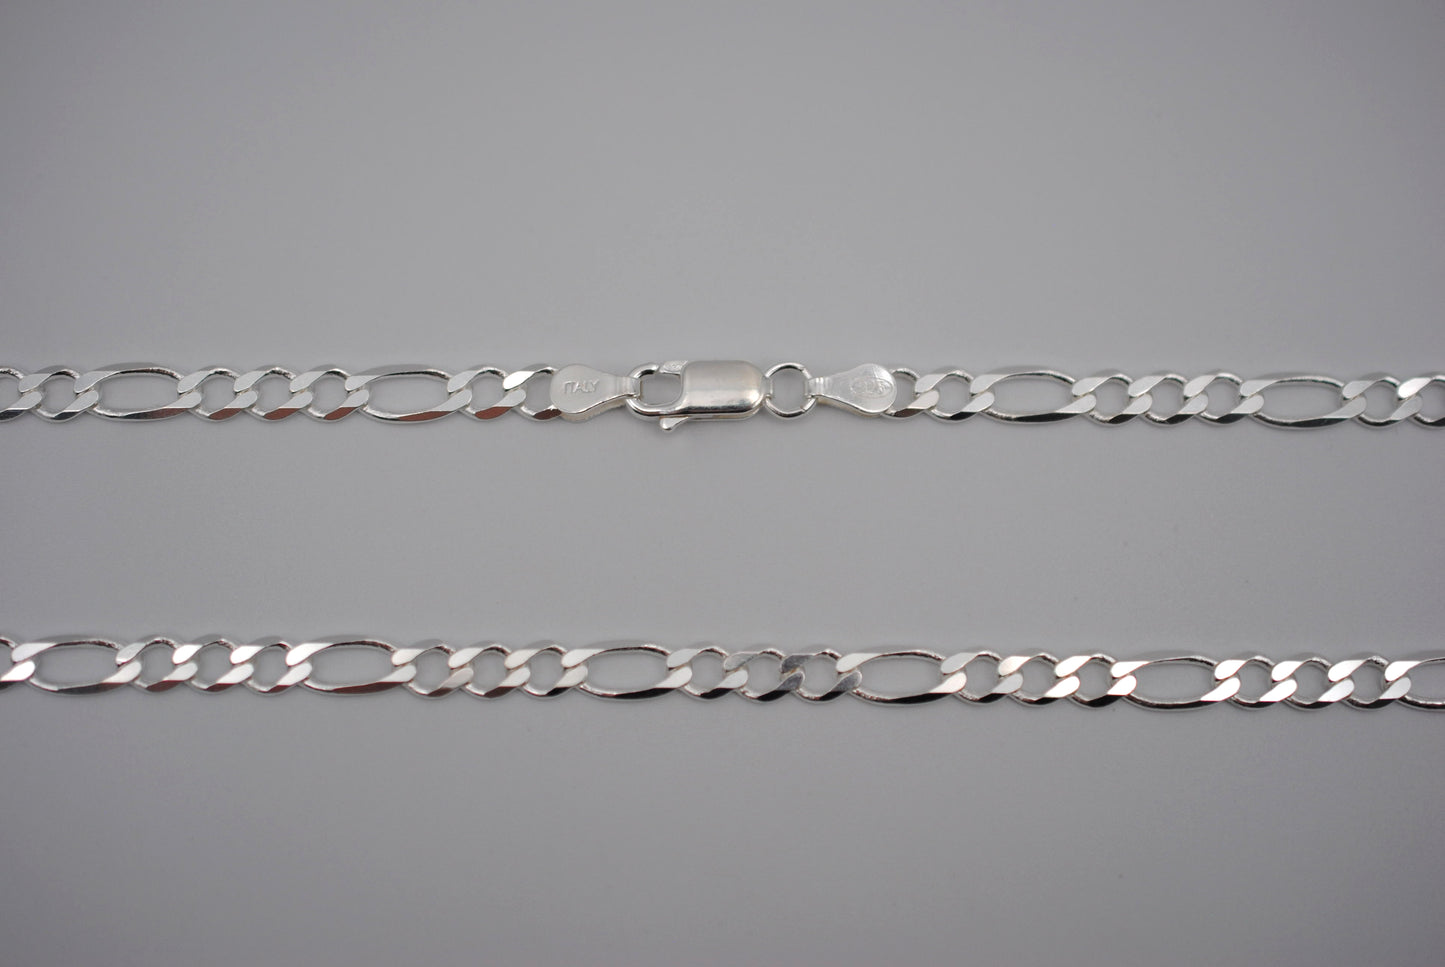 Silver Figaro Chain